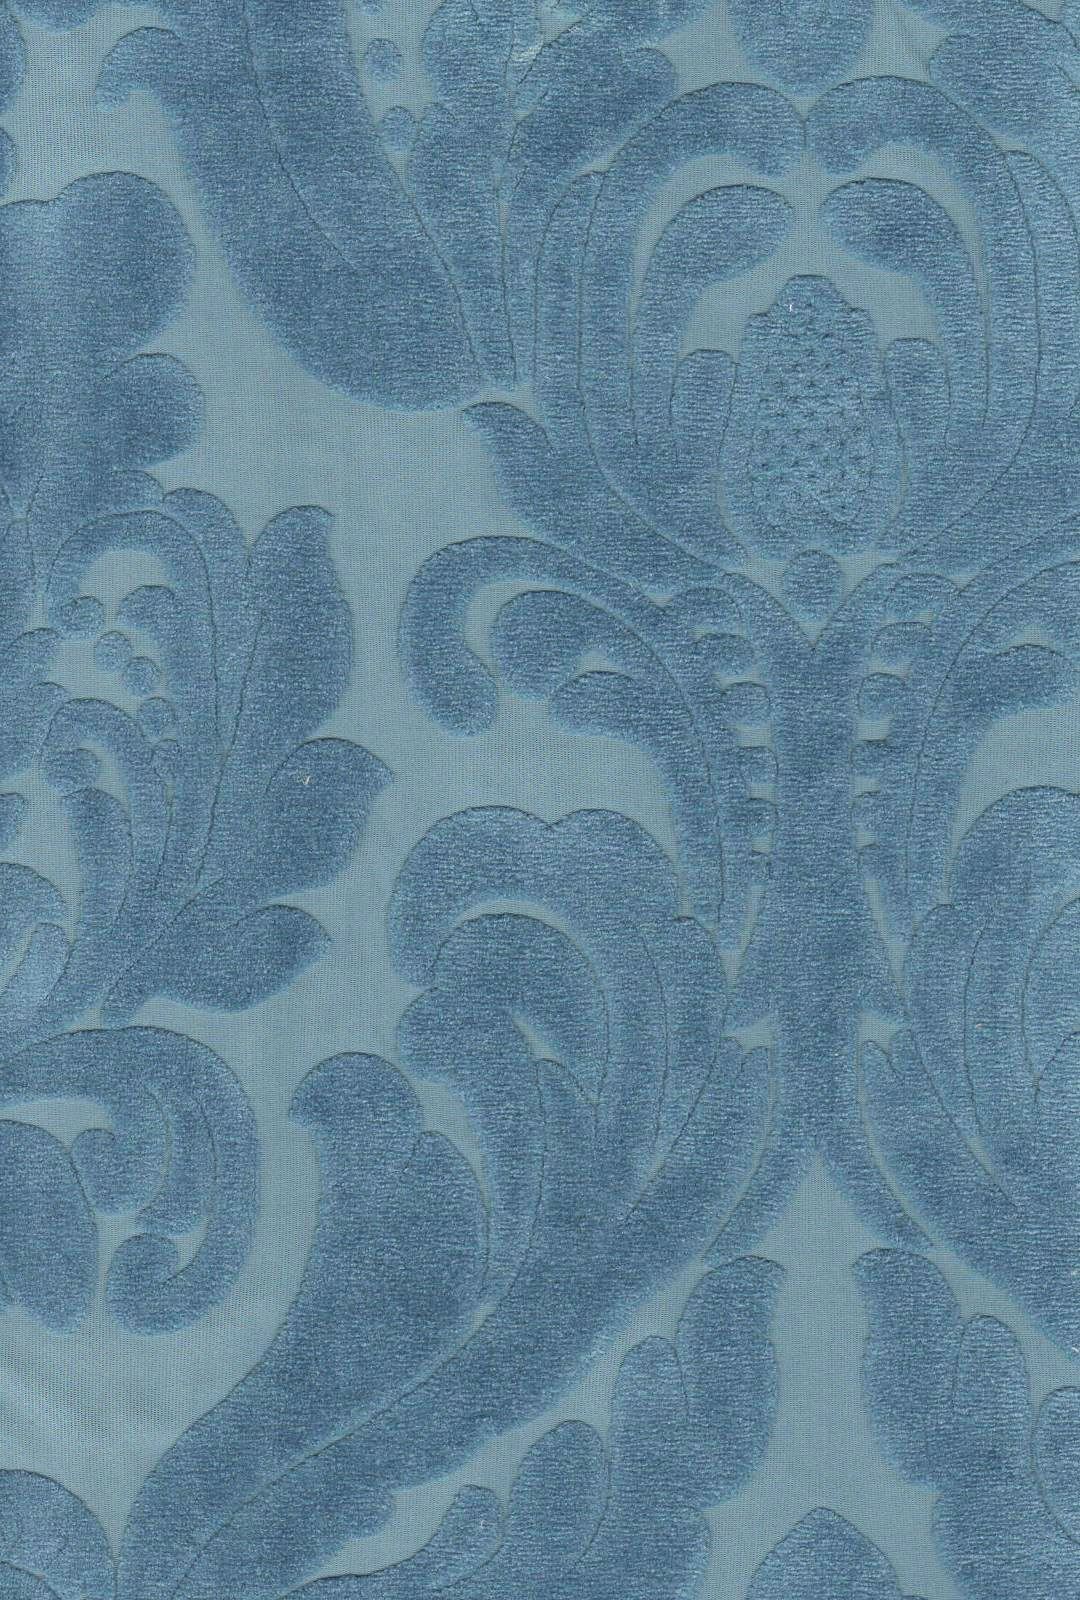 Smoke Gray, Velvet Upholstery Fabric, Home Decor, 54 Wide